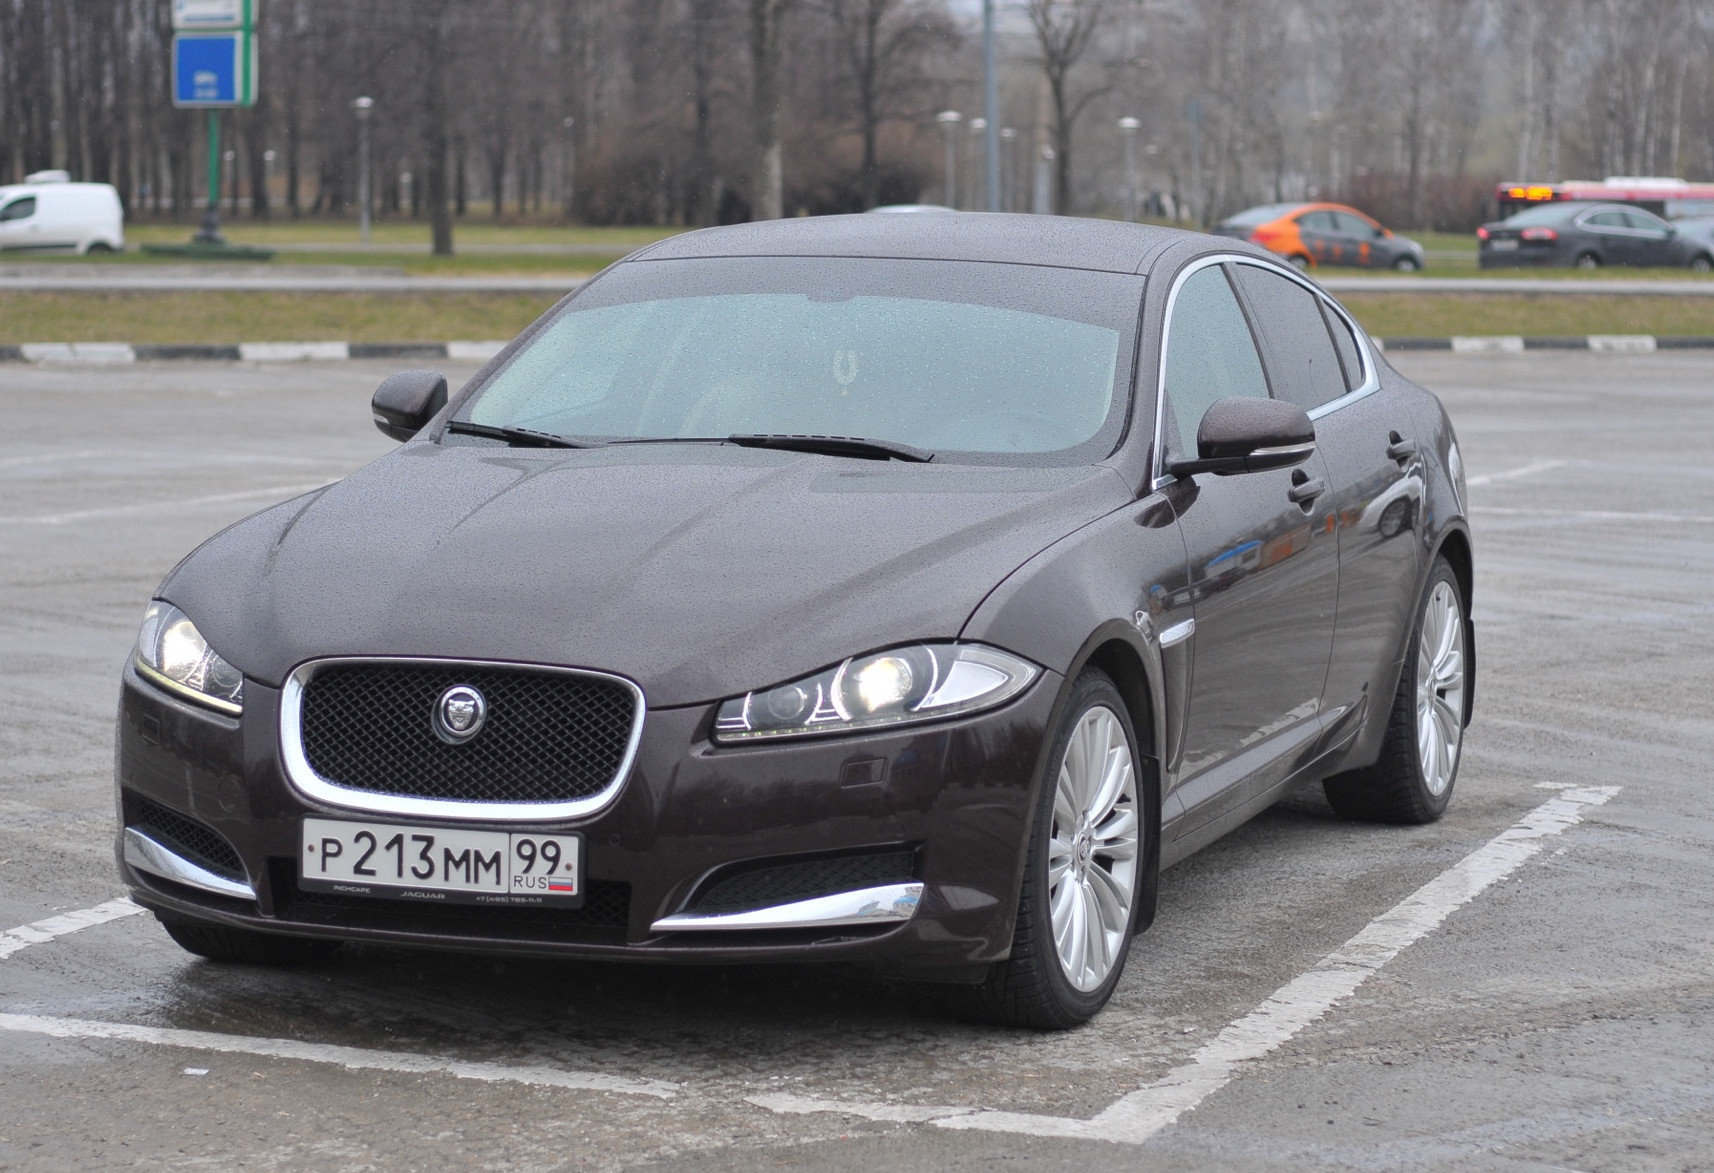 Аренда jaguar xf бизнес класса 2012 года в городе Москва Орехово от 5432 руб./сутки, задний привод, двигатель: дизель, объем 3 литра, ОСАГО (Впишу в полис), без водителя, недорого - RentRide